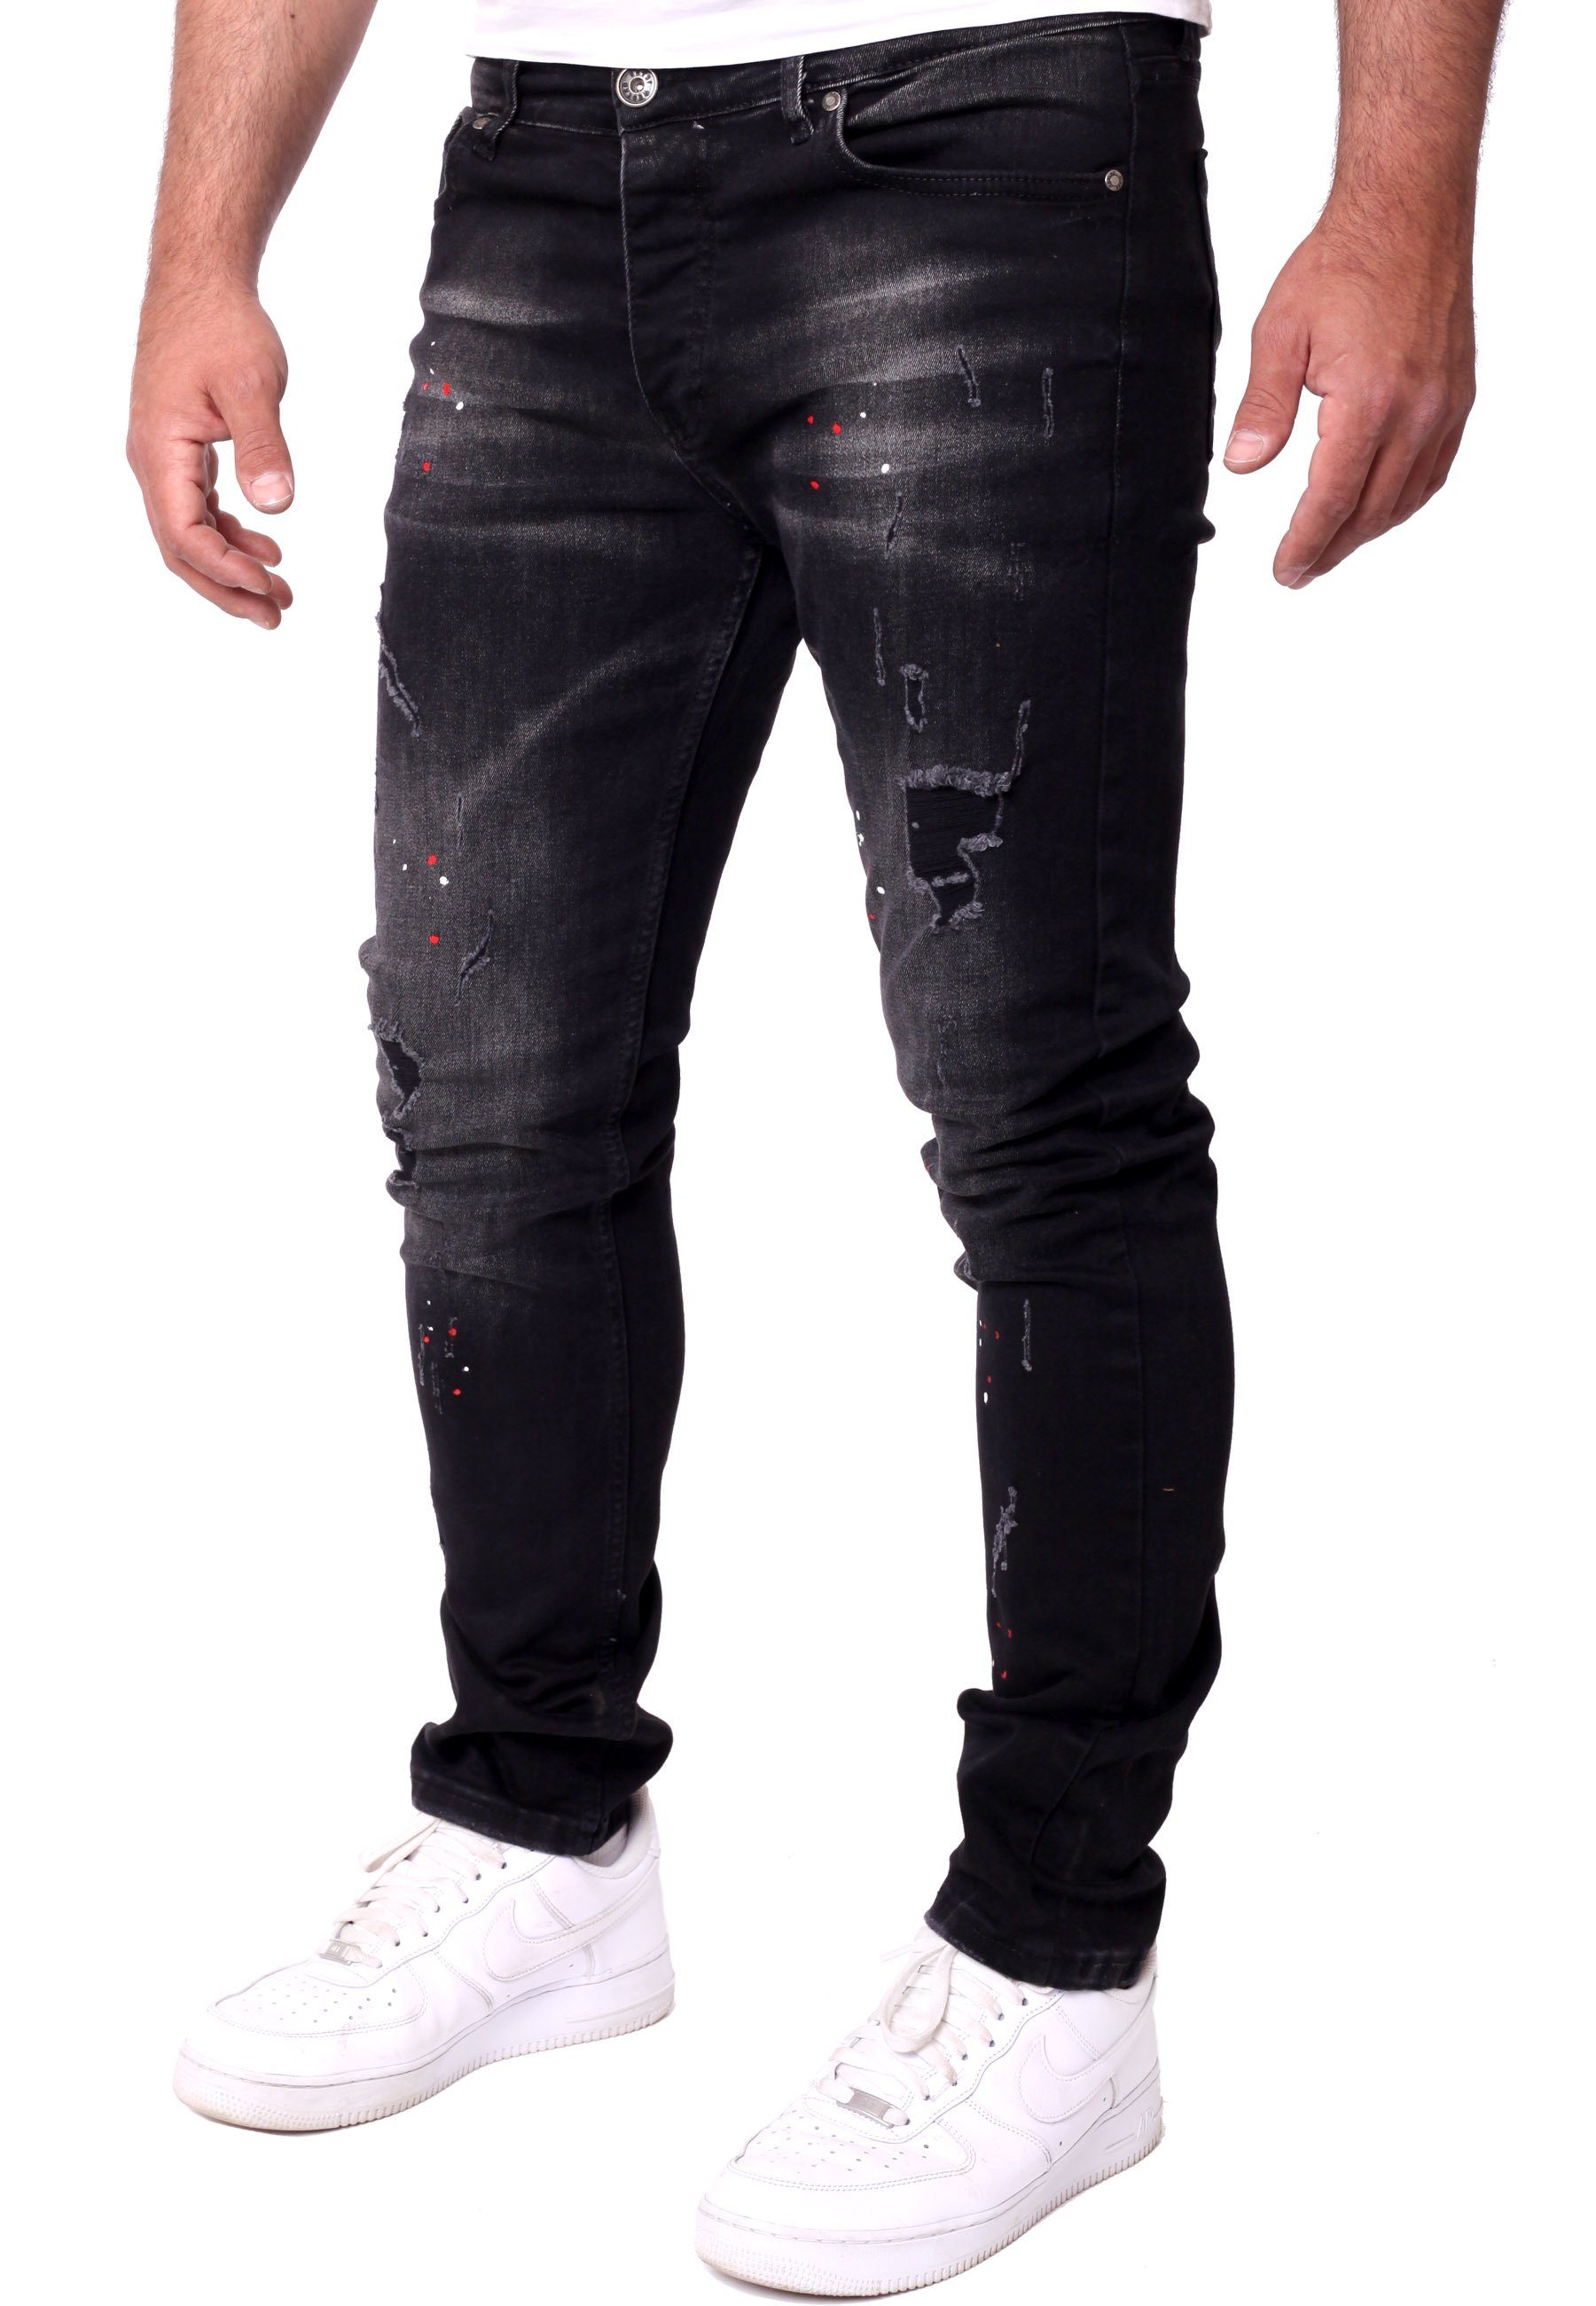 Reslad Destroyed-Jeans Reslad Destroyed Stretch Herren Fit Color-Splashes Männer-Hose Slim Jeanshose Denim schwarz Jeans Destroyed Jeanshose